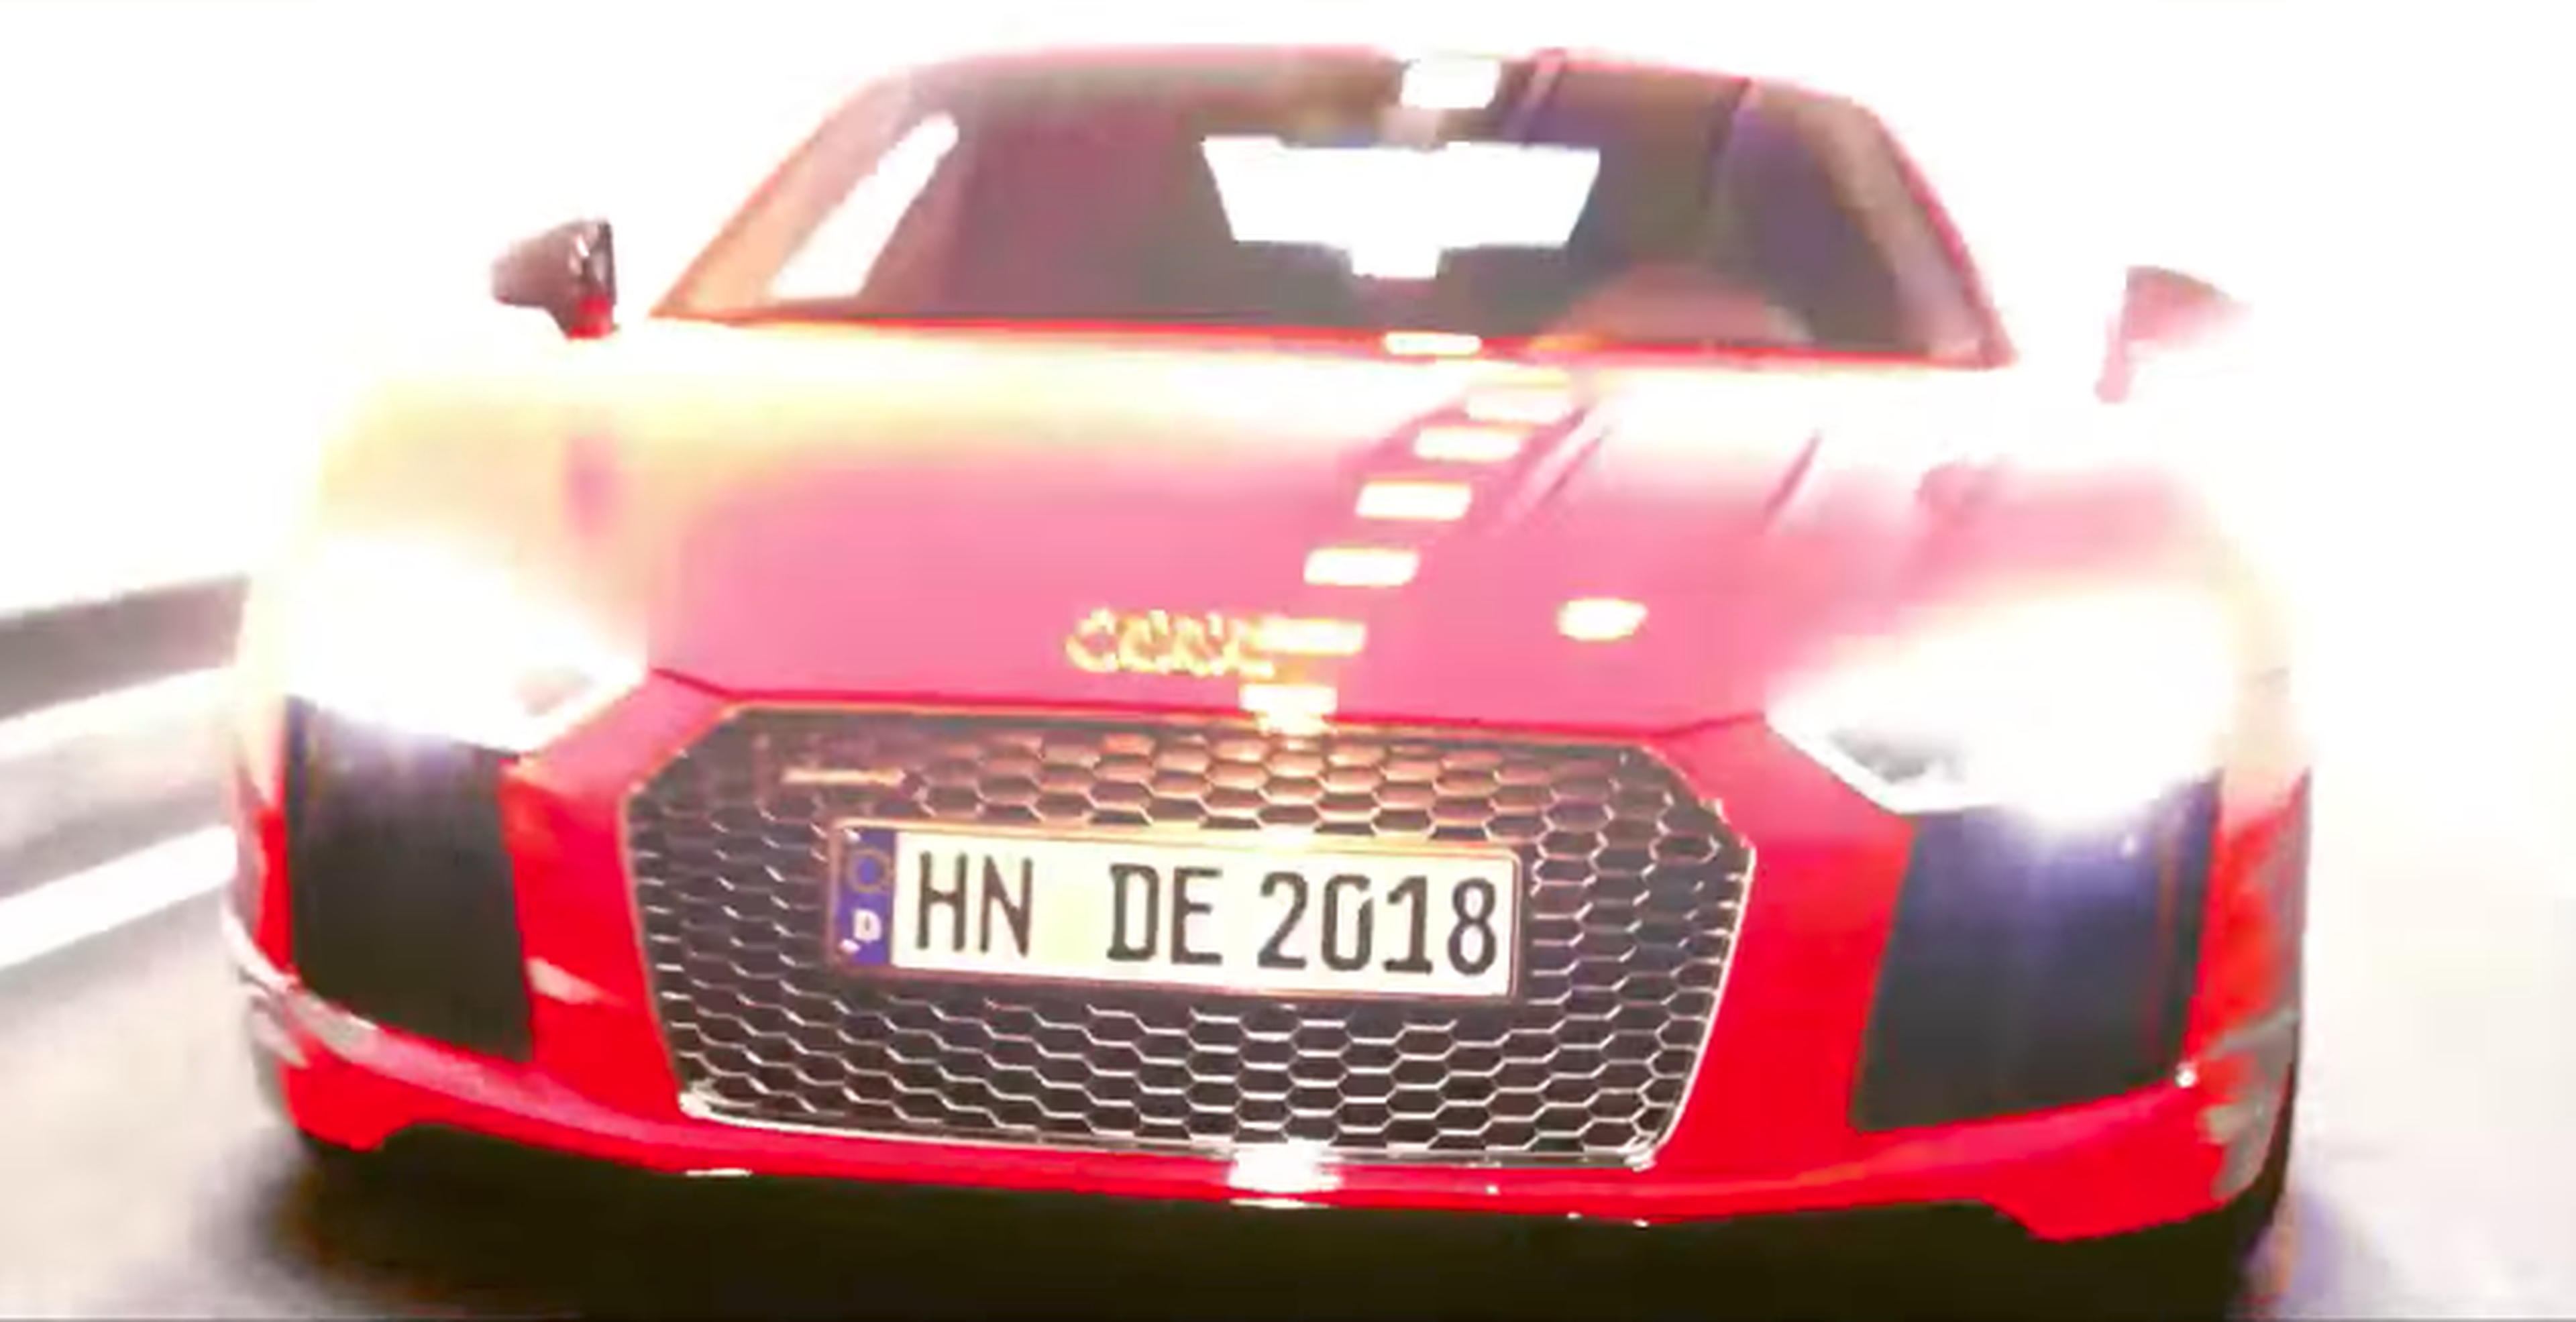 El sonido es la huella dactilar del Audi TT RS. ¡Flipa qué chulada de vídeo!